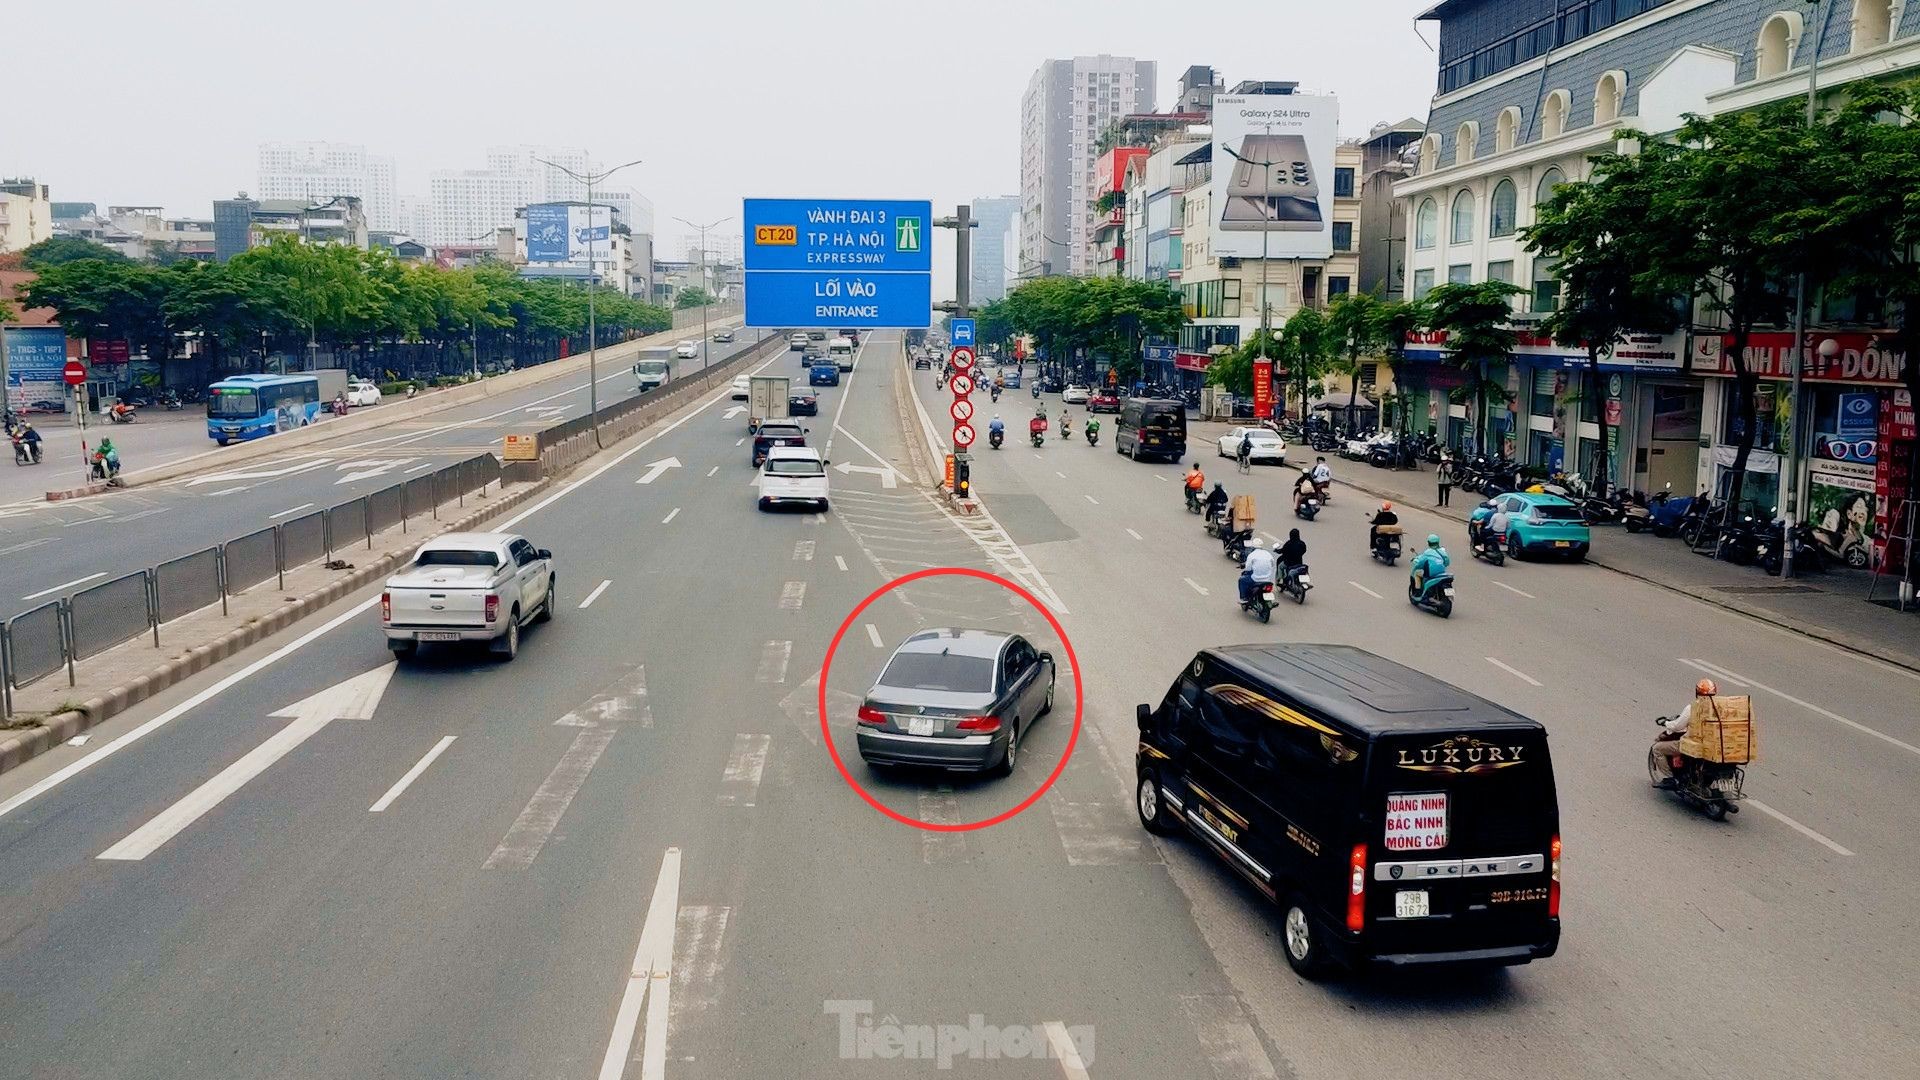 Thông xe cầu vượt Mai Dịch, vì sao giao thông vẫn hỗn loạn? ảnh 4